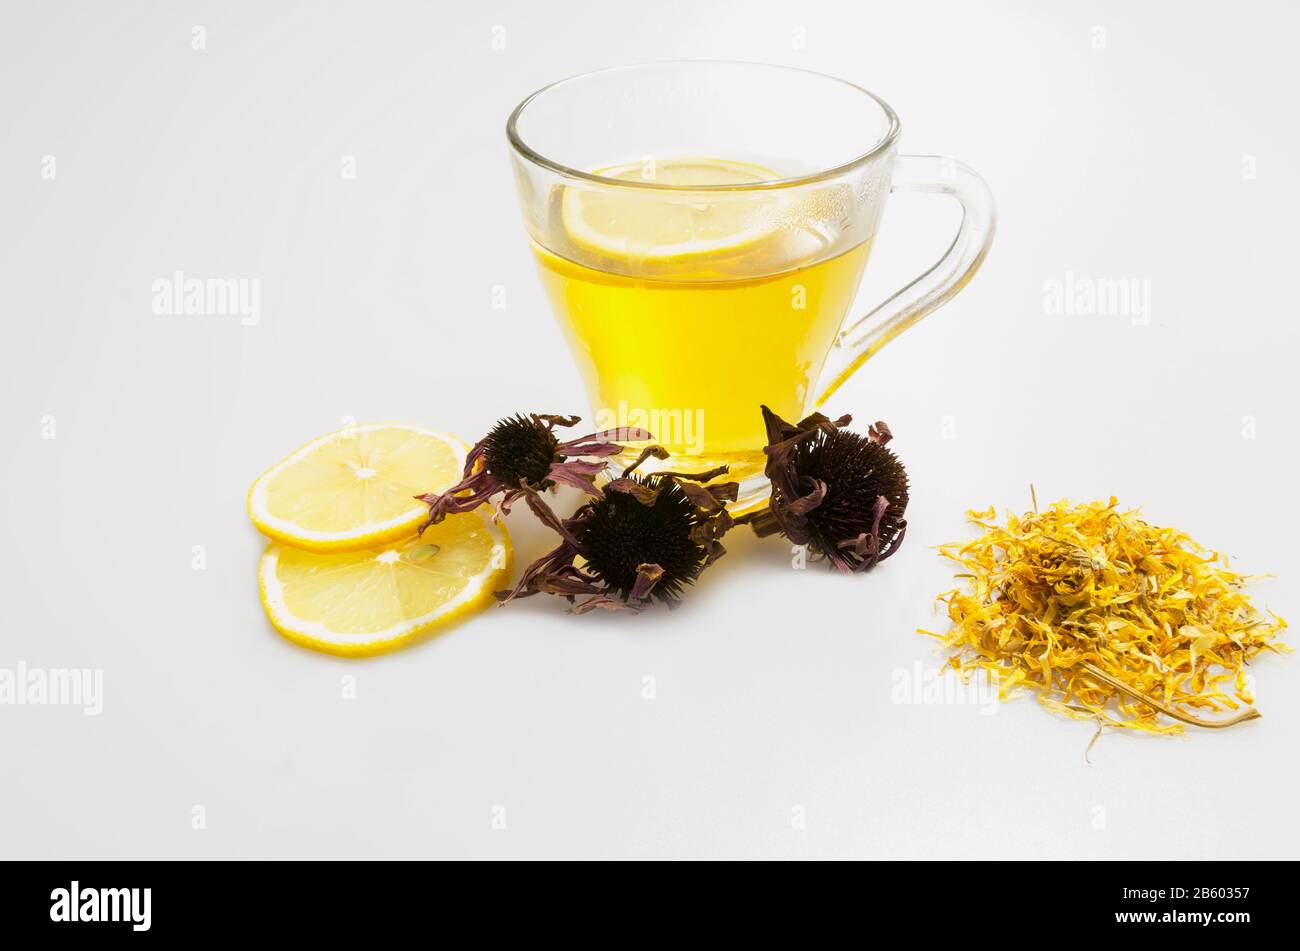 tazza di tè per uso medico a base di erbe naturali, limone, su sfondo bianco Foto Stock